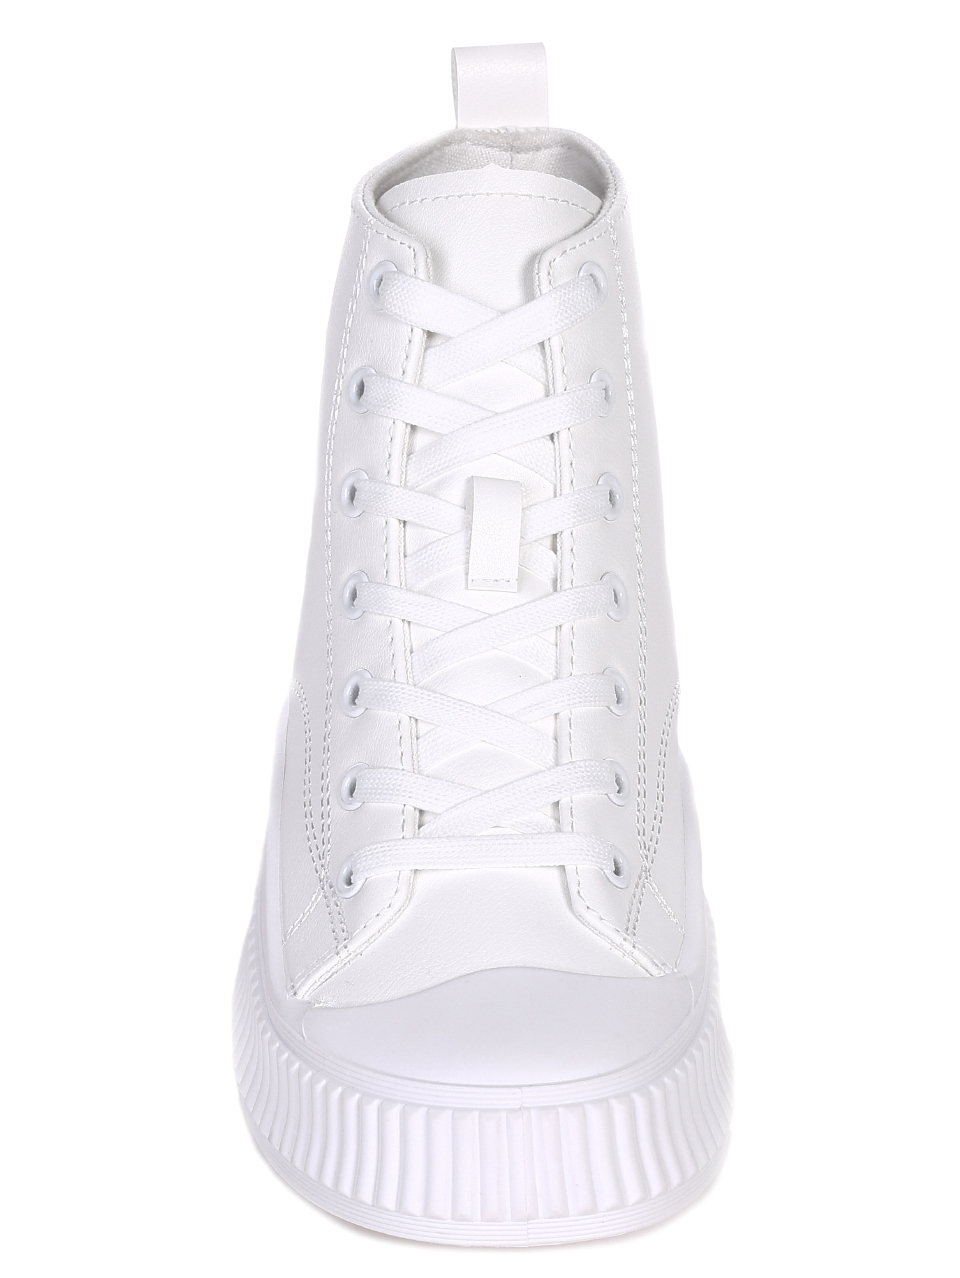 Ежедневни дамски обувки в бяло 2U-22032 white